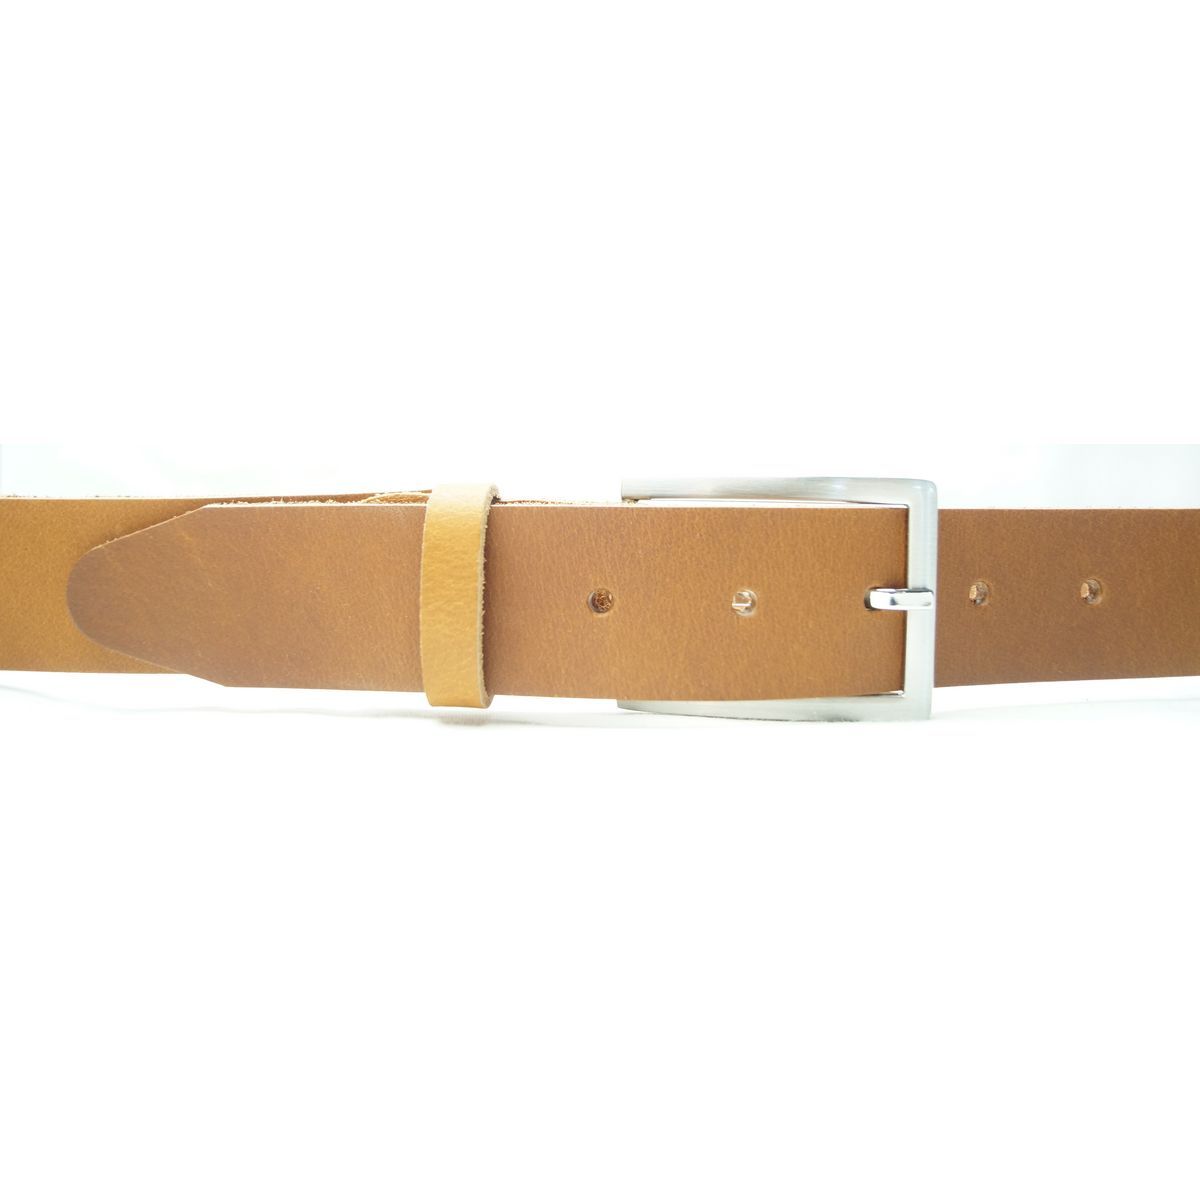 Læder Bælte - Calvin - Cognac - Bælte fra The Leather Belt Co. hos The Prince Webshop